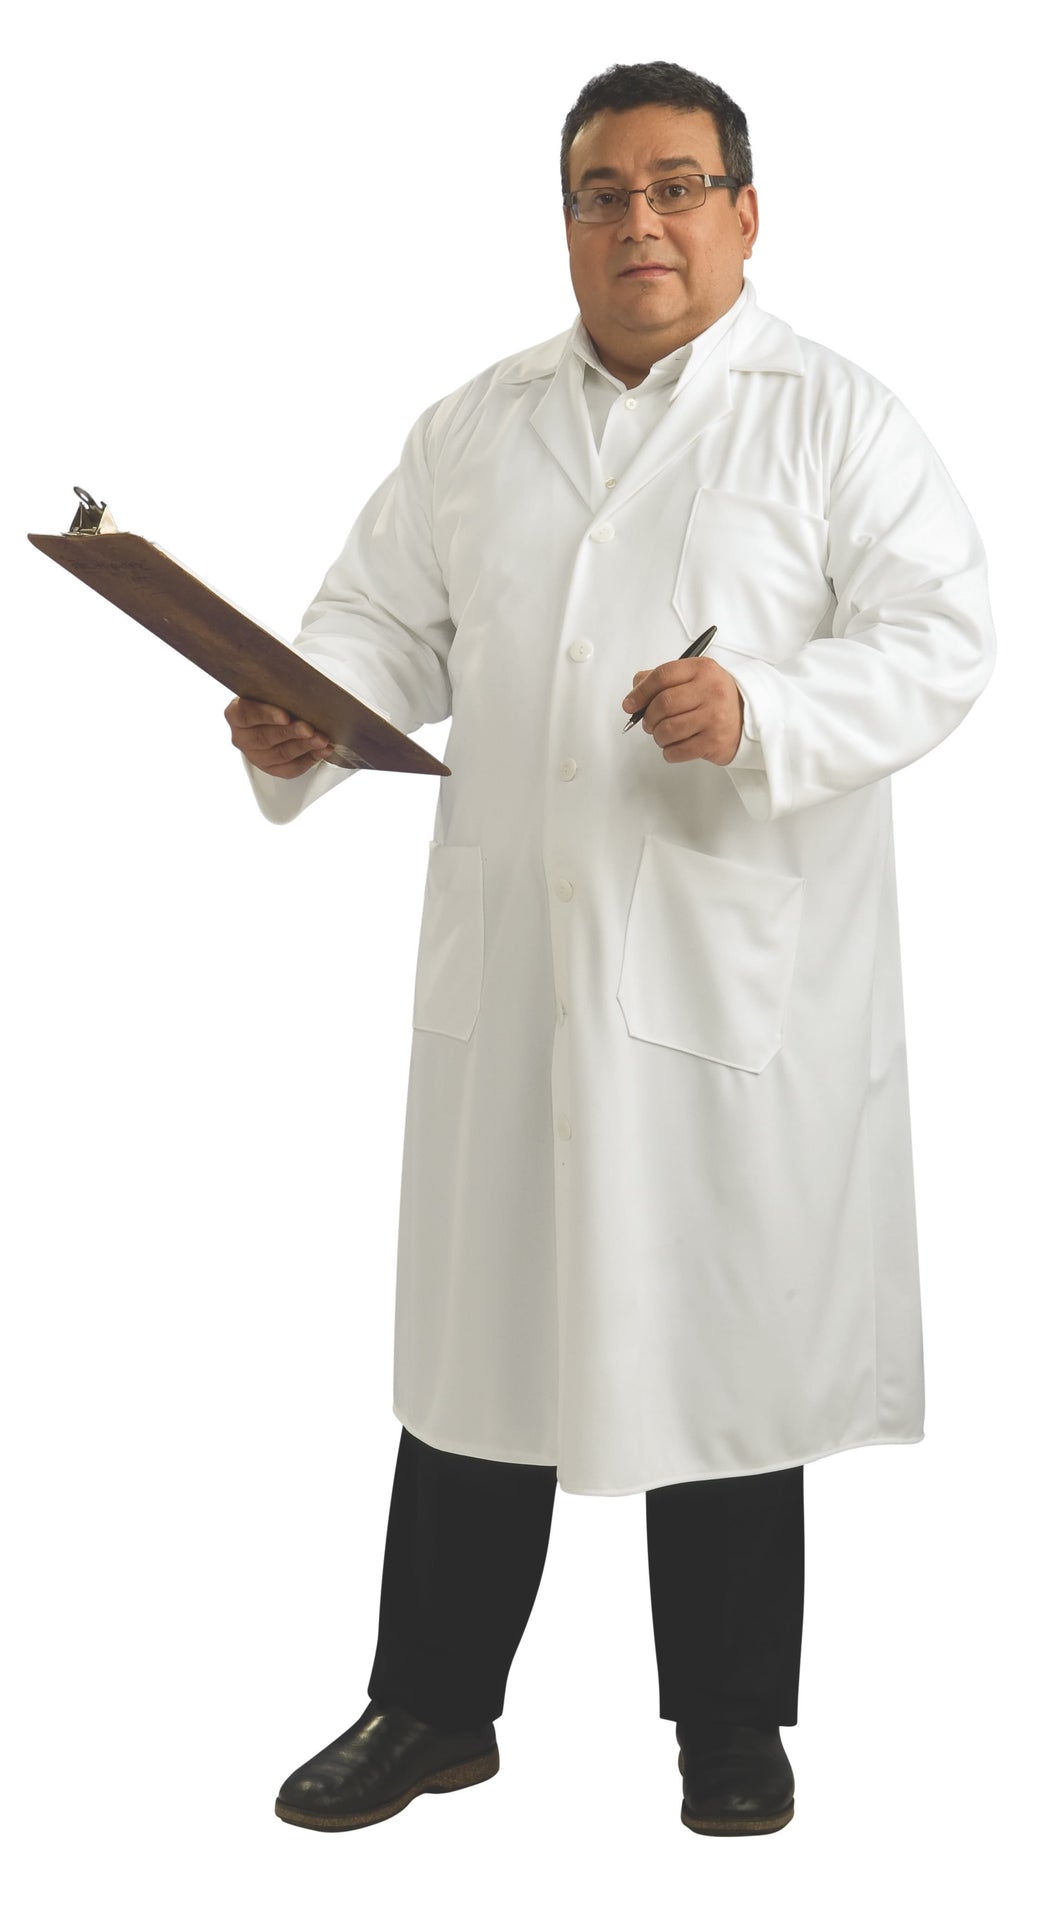 Plus Size Lab Coat Adult Costume